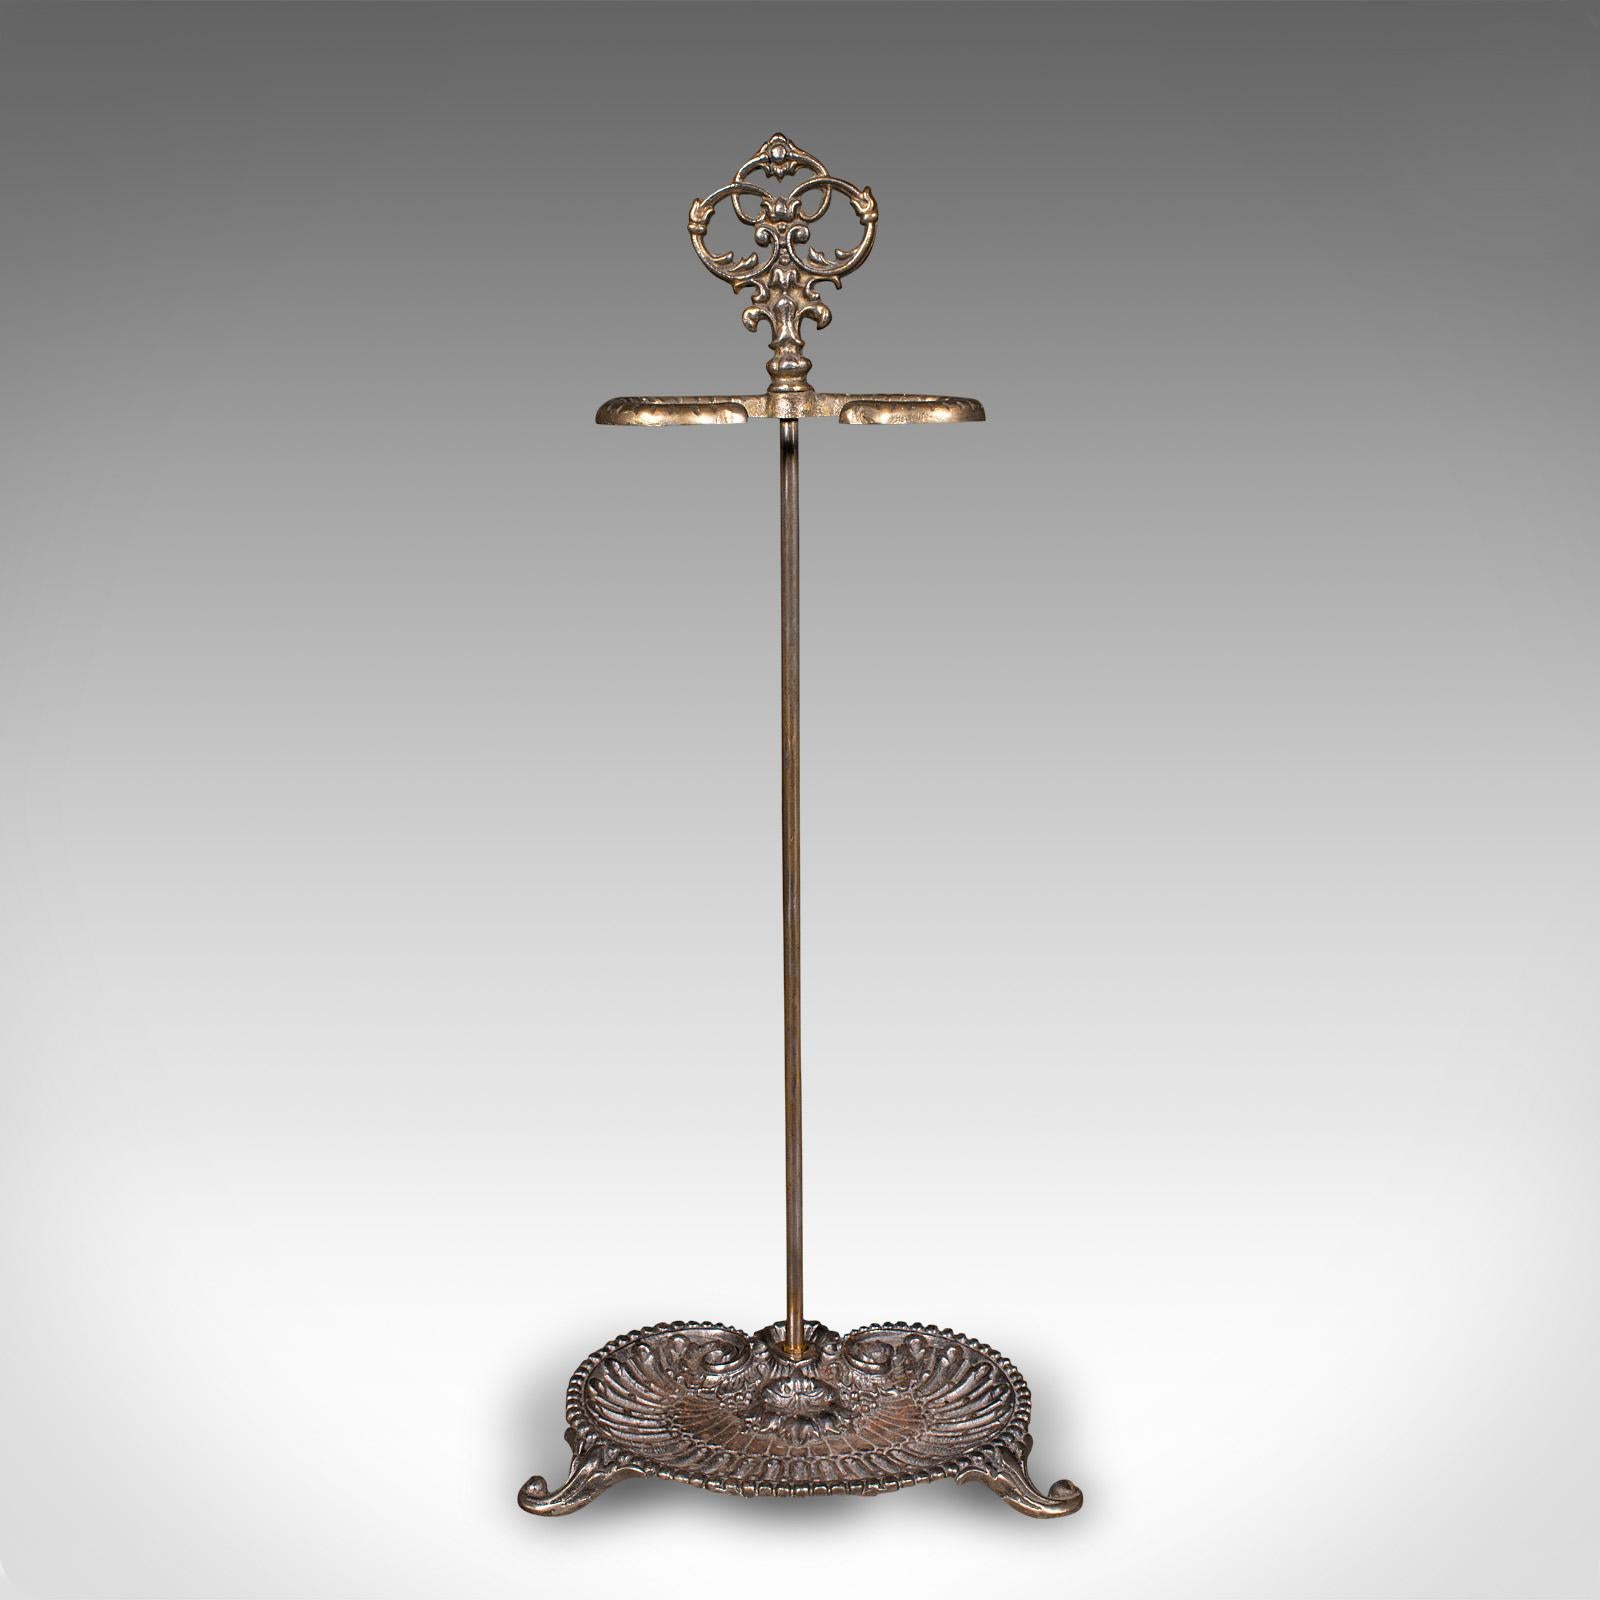 Dies ist ein antiker Ständer im Jugendstil. Ein französischer Schirmständer aus Metallguss aus dem späten Viktorianischen Zeitalter, um 1900.

Eine anmutige Form im Jugendstil, die Ihren Empfangssaal bereichert
Zeigt eine wünschenswerte gealterte